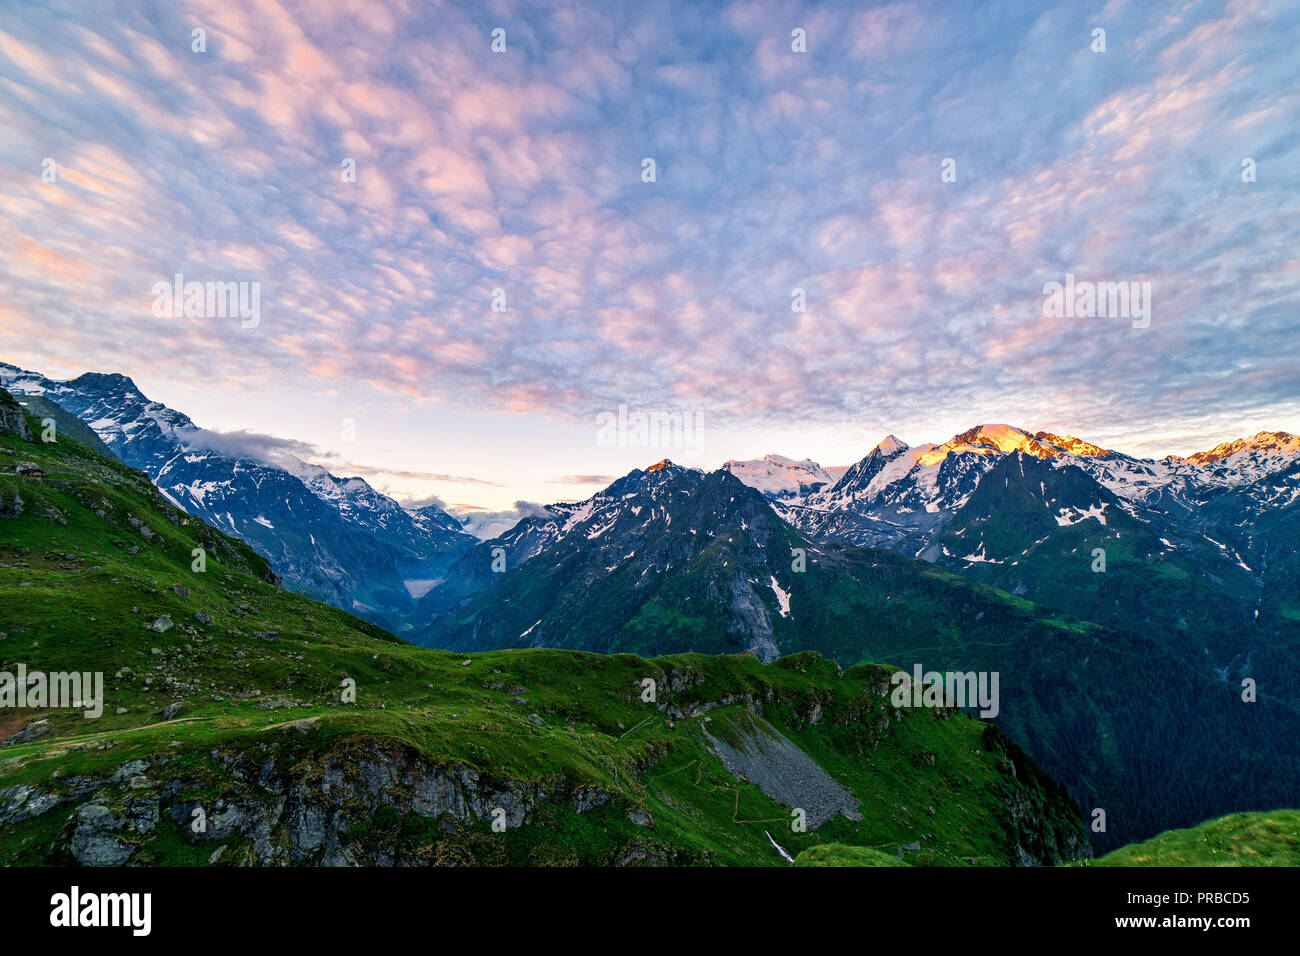 Einen malerischen Blick auf den wunderschönen Schweizer Alpen Berge. Dramatische Szene am frühen Morgen in den hohen Bergen mit dem ersten Licht. Blaue Stunde Sonnenaufgang mit pinkfarbenen und blauen t Stockfoto